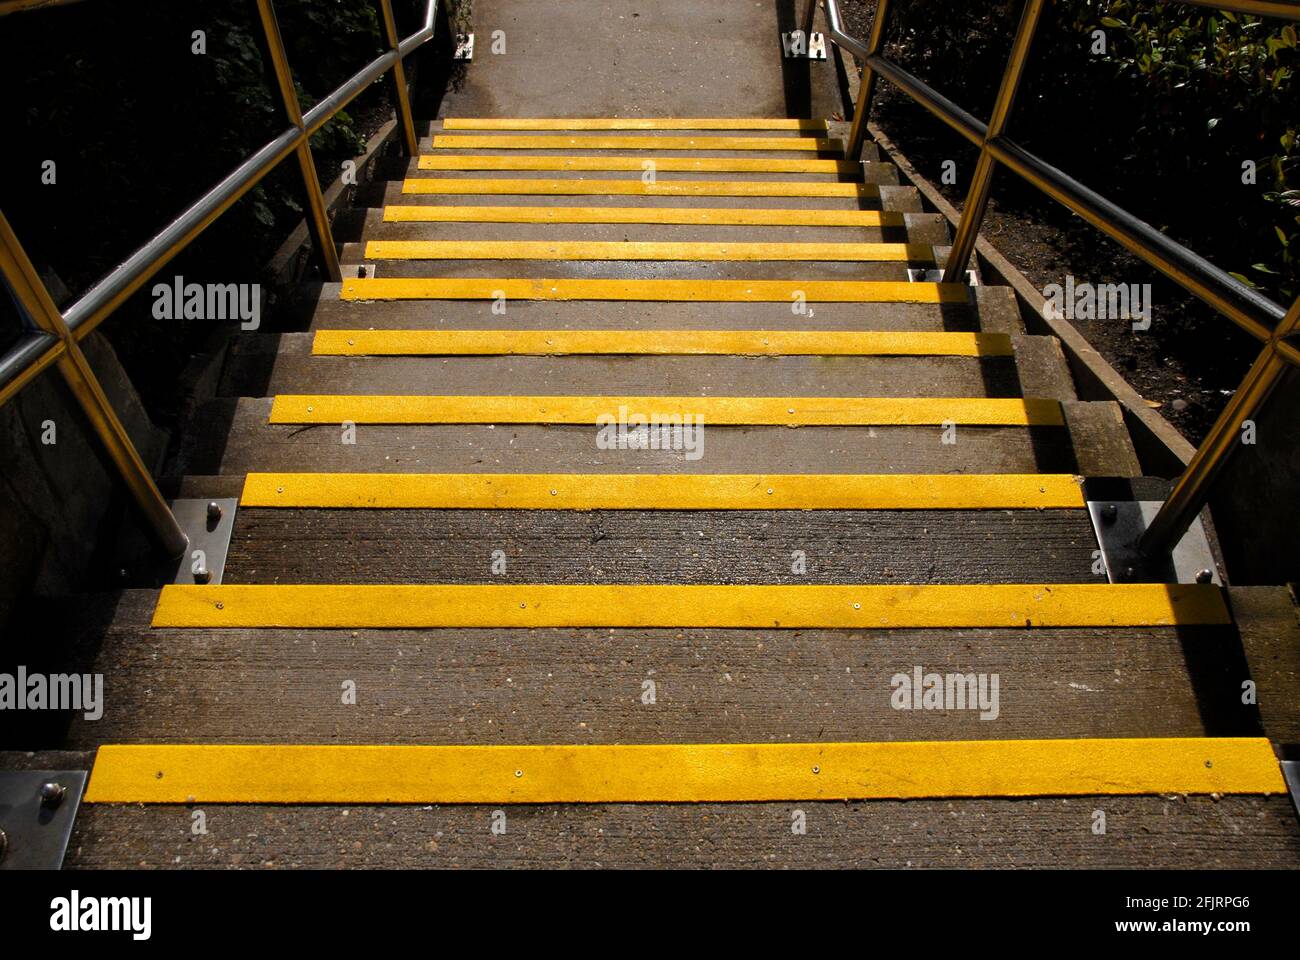 Ein Blick auf eine Reihe von Stufen mit gelben Kanten an den Stufen, um sehbehinderten Menschen zu helfen, oder eine klarere Identifizierung für alle nach Einbruch der Dunkelheit Stockfoto